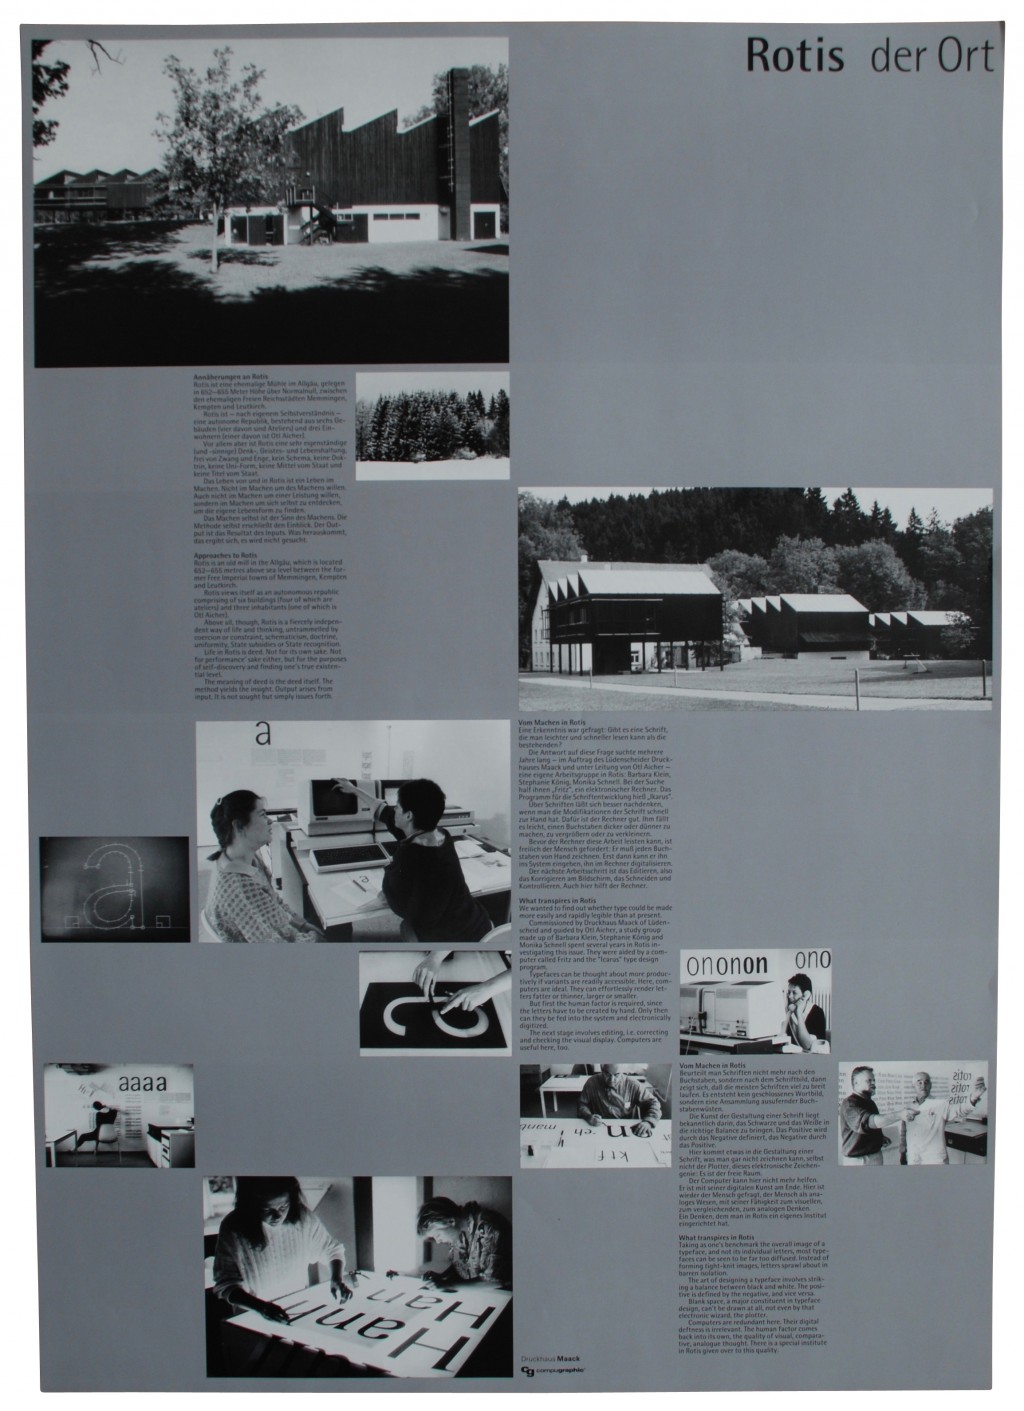 Plakat 'Rotis der Ort', Otl Aicher 1988